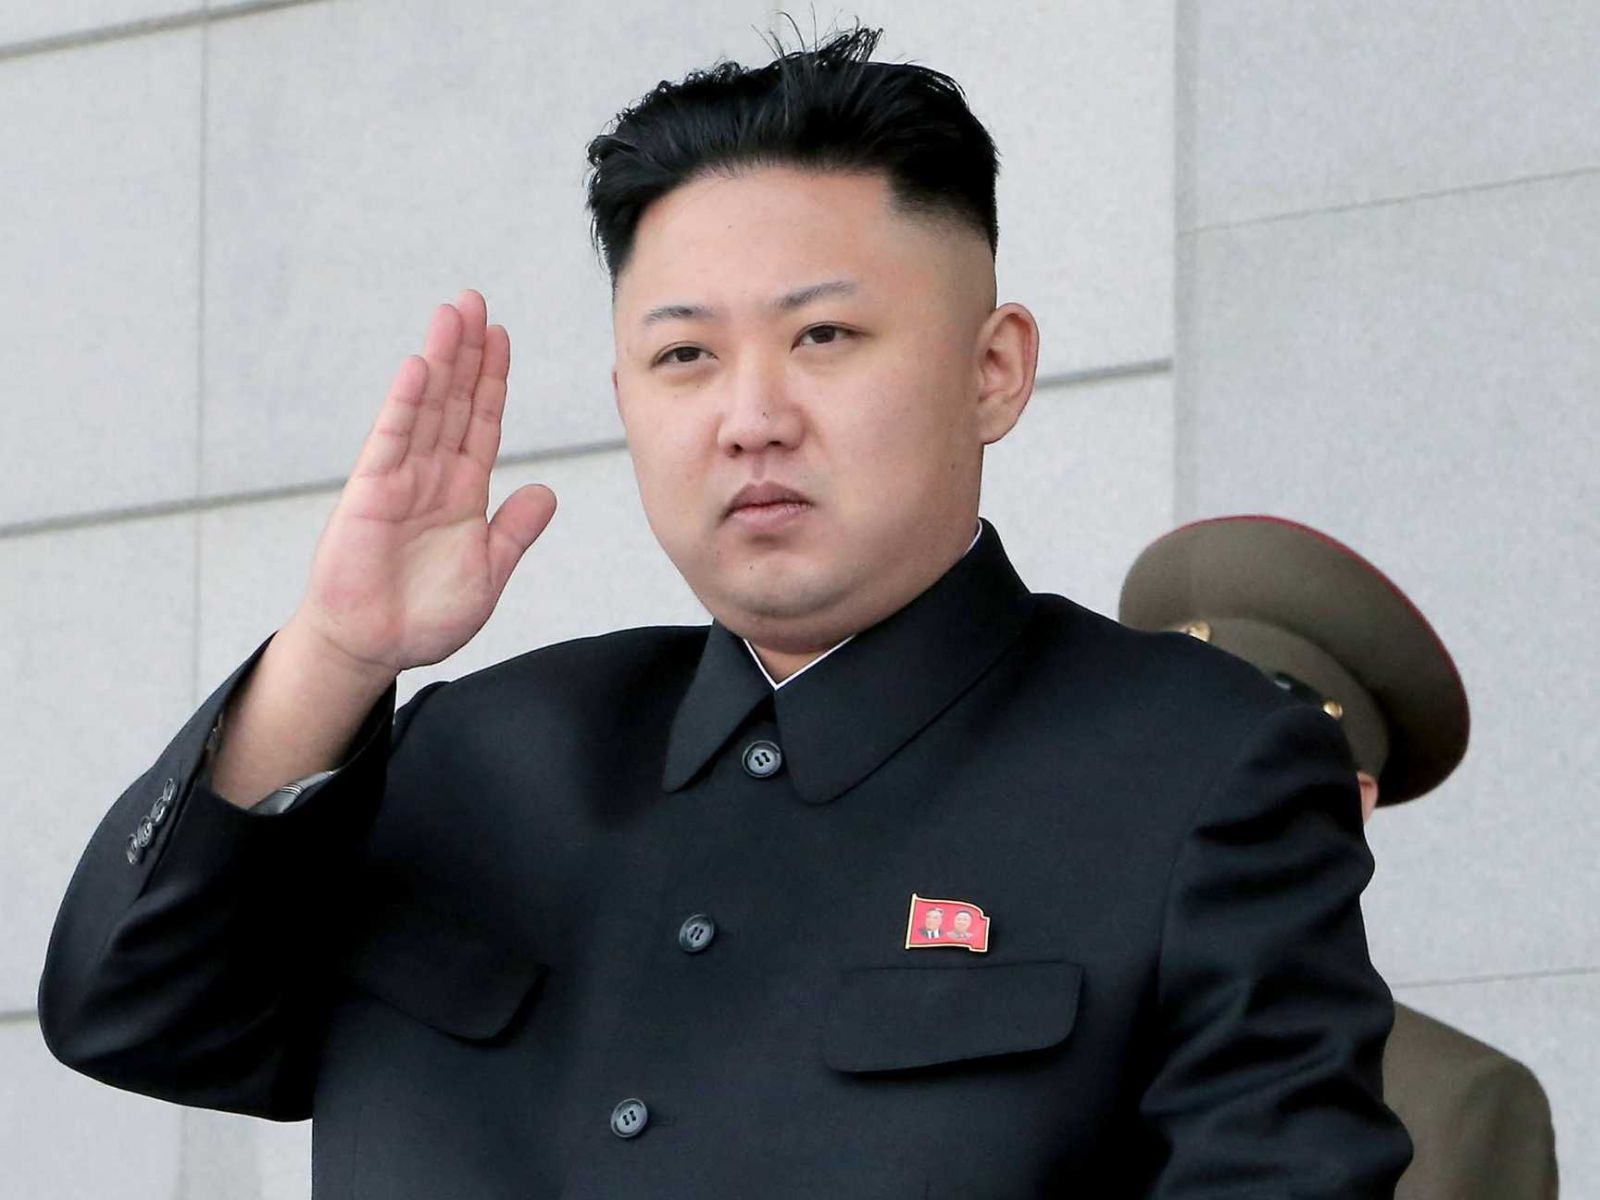 لهذه الأسباب.. زعيم كوريا الشمالية أغرب زعماء العالم